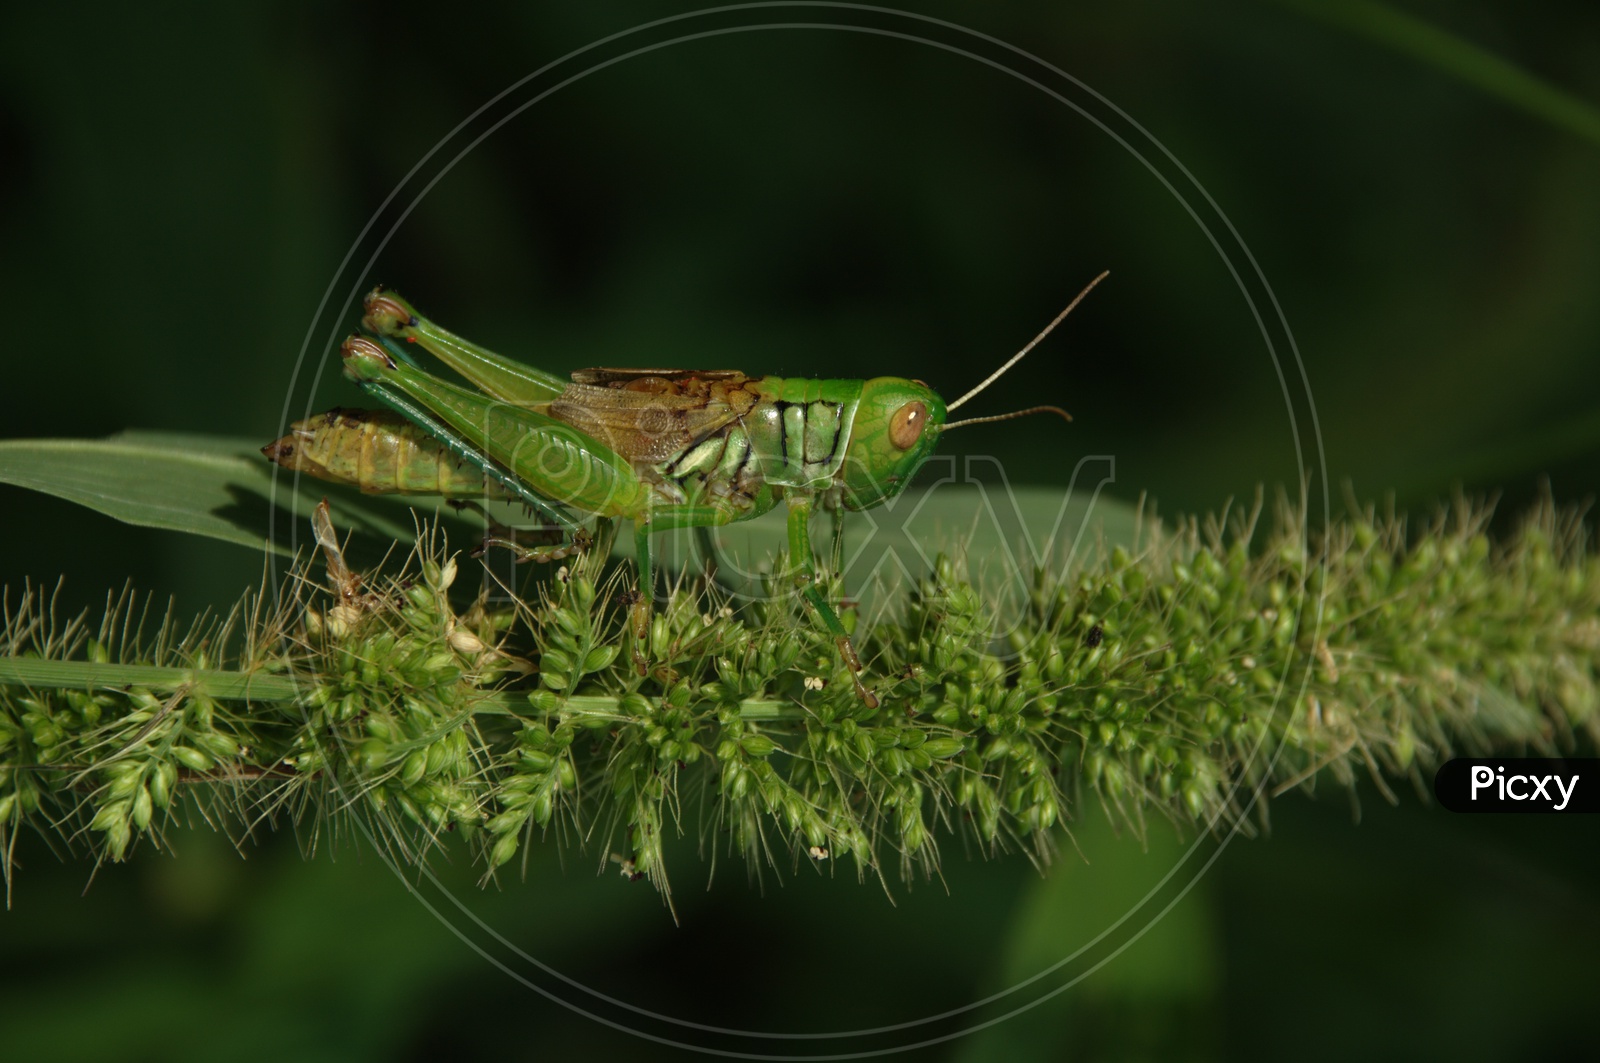 Common green Grasshopper  on garden Plants